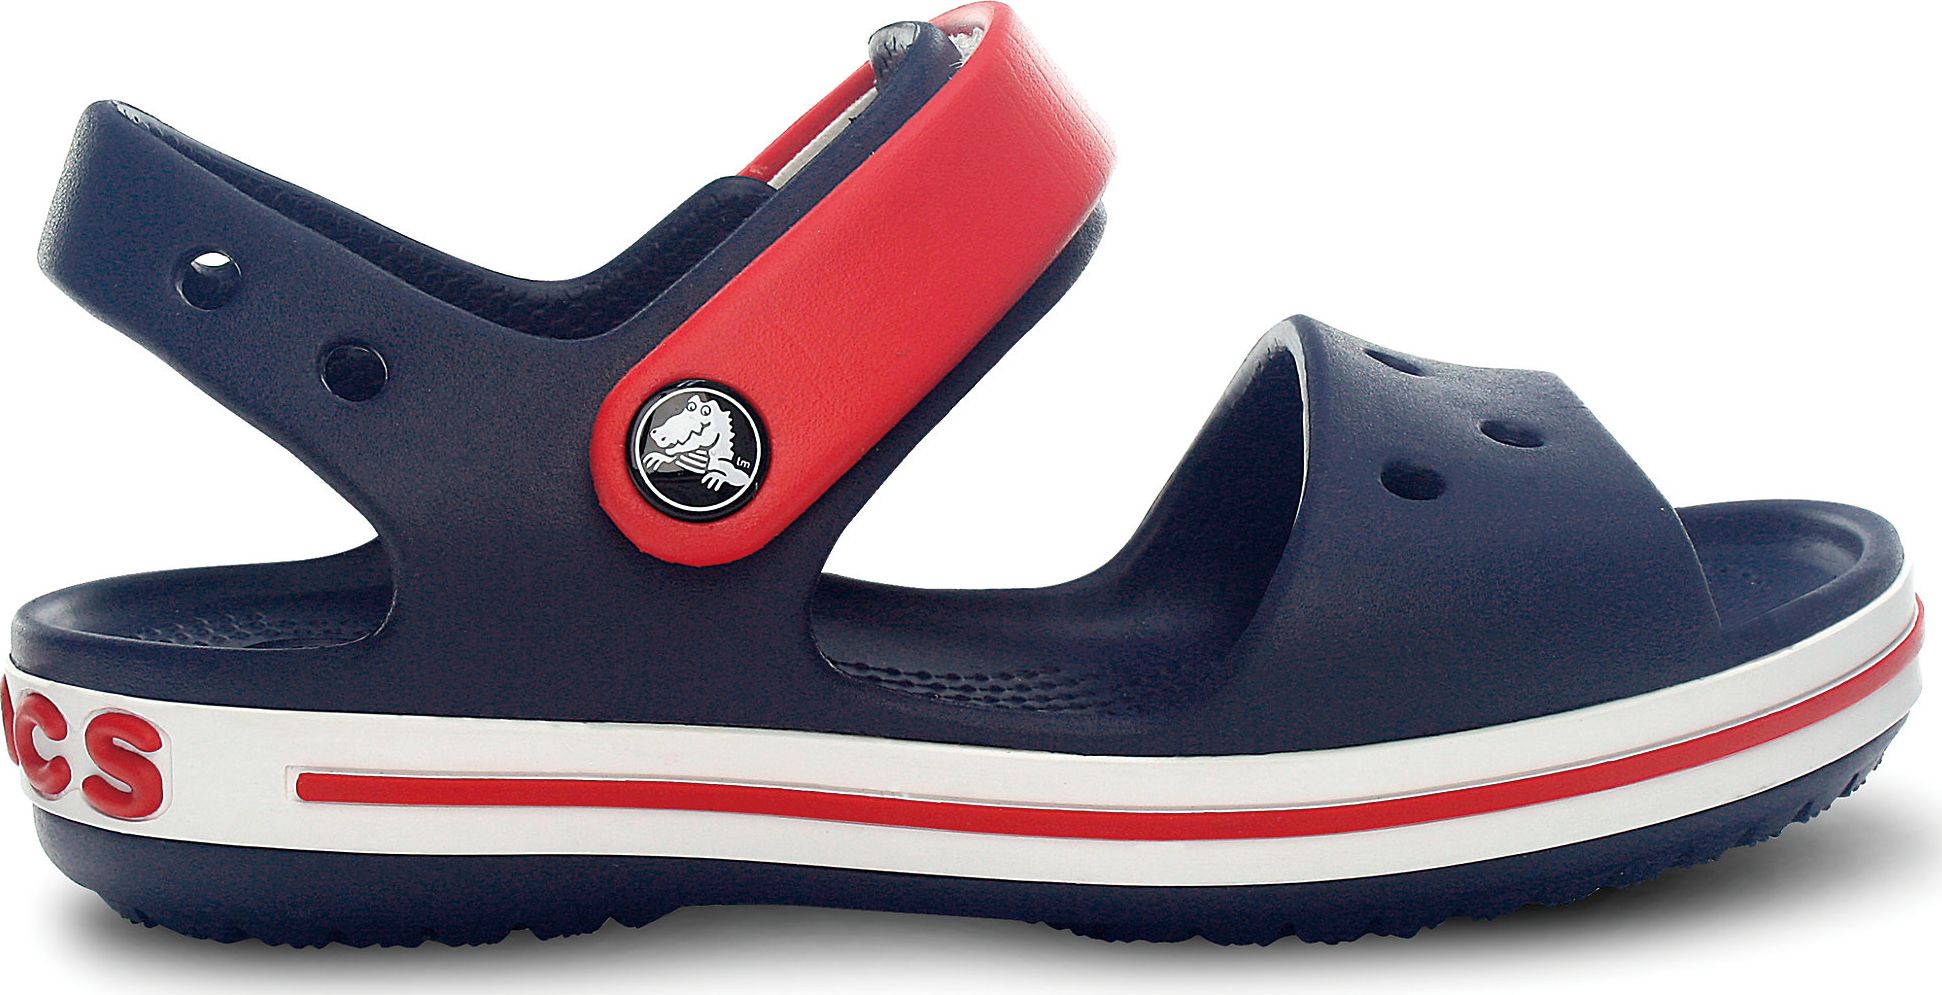 Sandalete pentru copii Crocband Navy / Red y. 29 (12856)